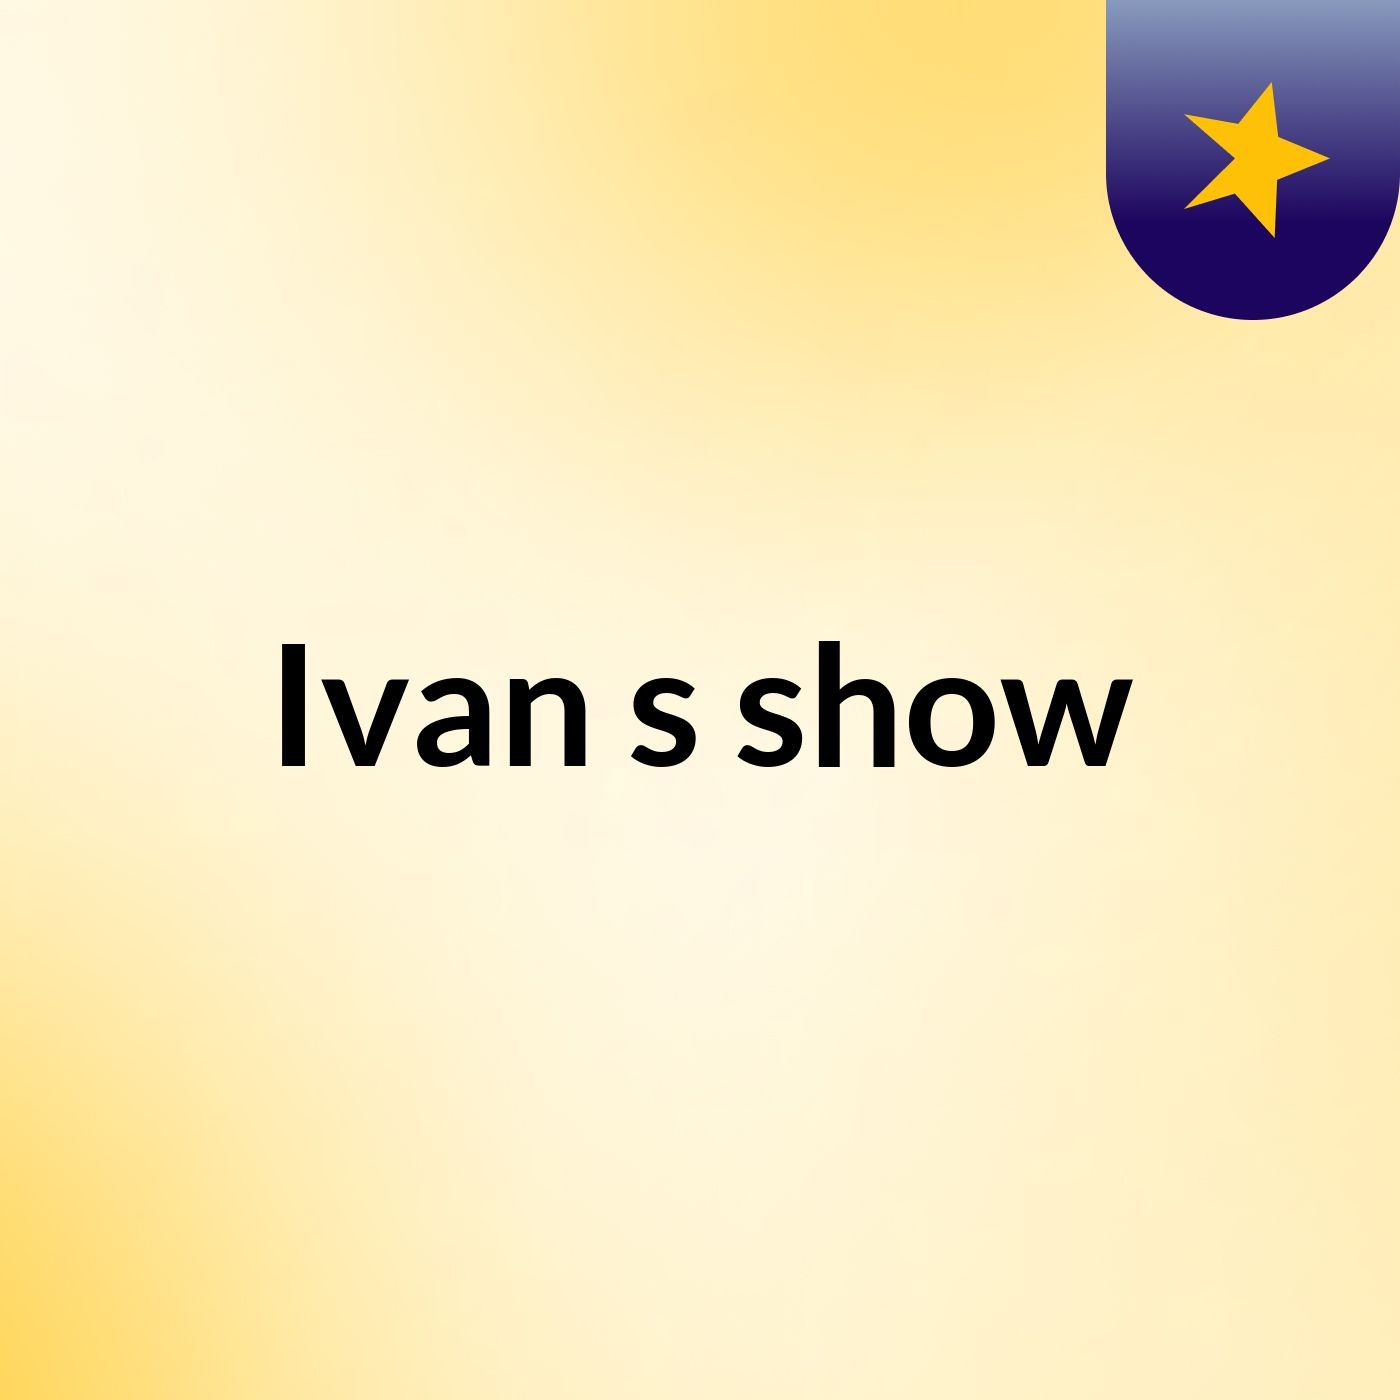 Ivan's show